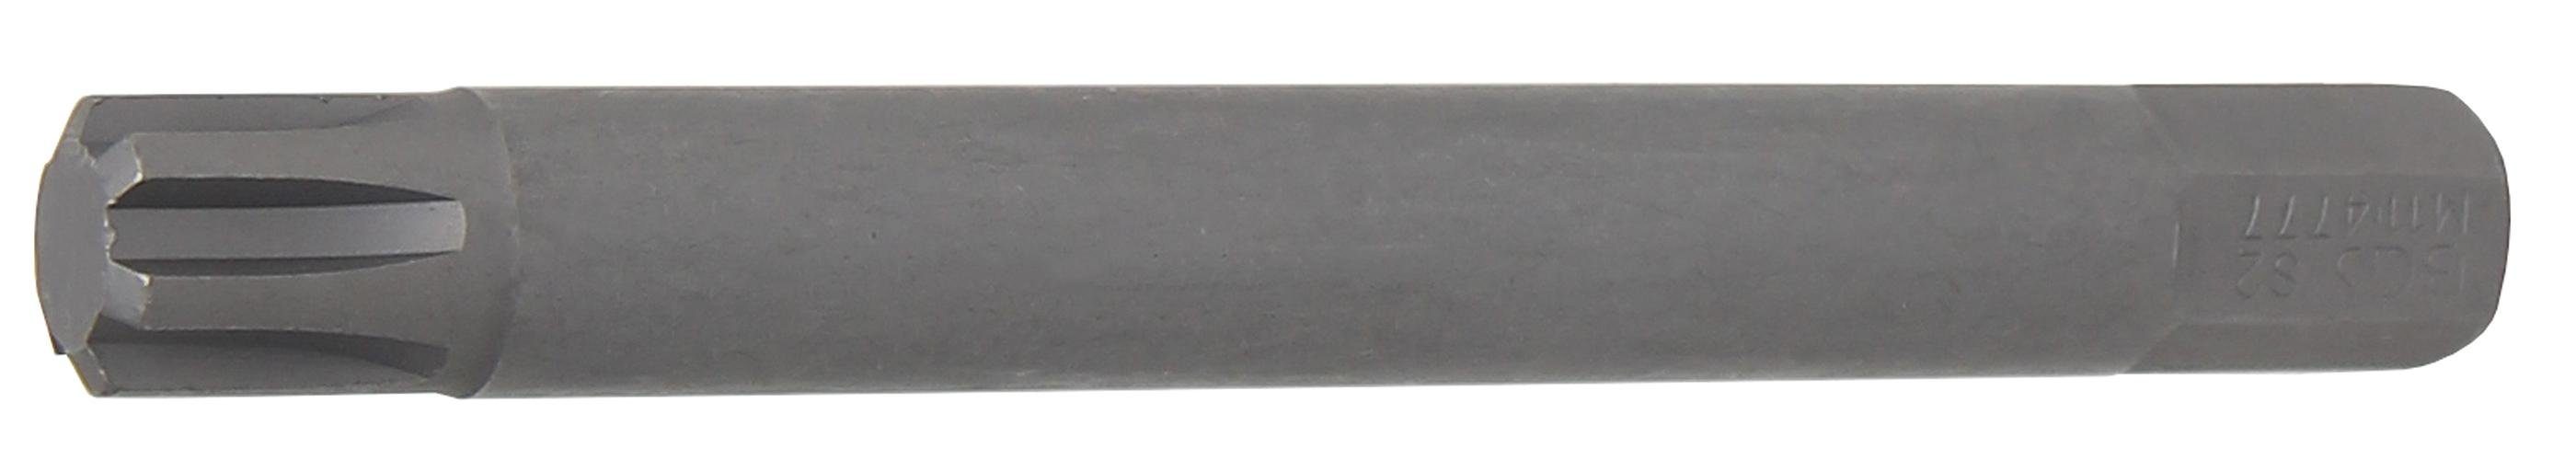 BGS technic Bit-Schraubendreher Bit, Länge 100 mm, Antrieb Außensechskant 10 mm (3/8), Keil-Profil (für RIBE) M11 | Schraubendreher